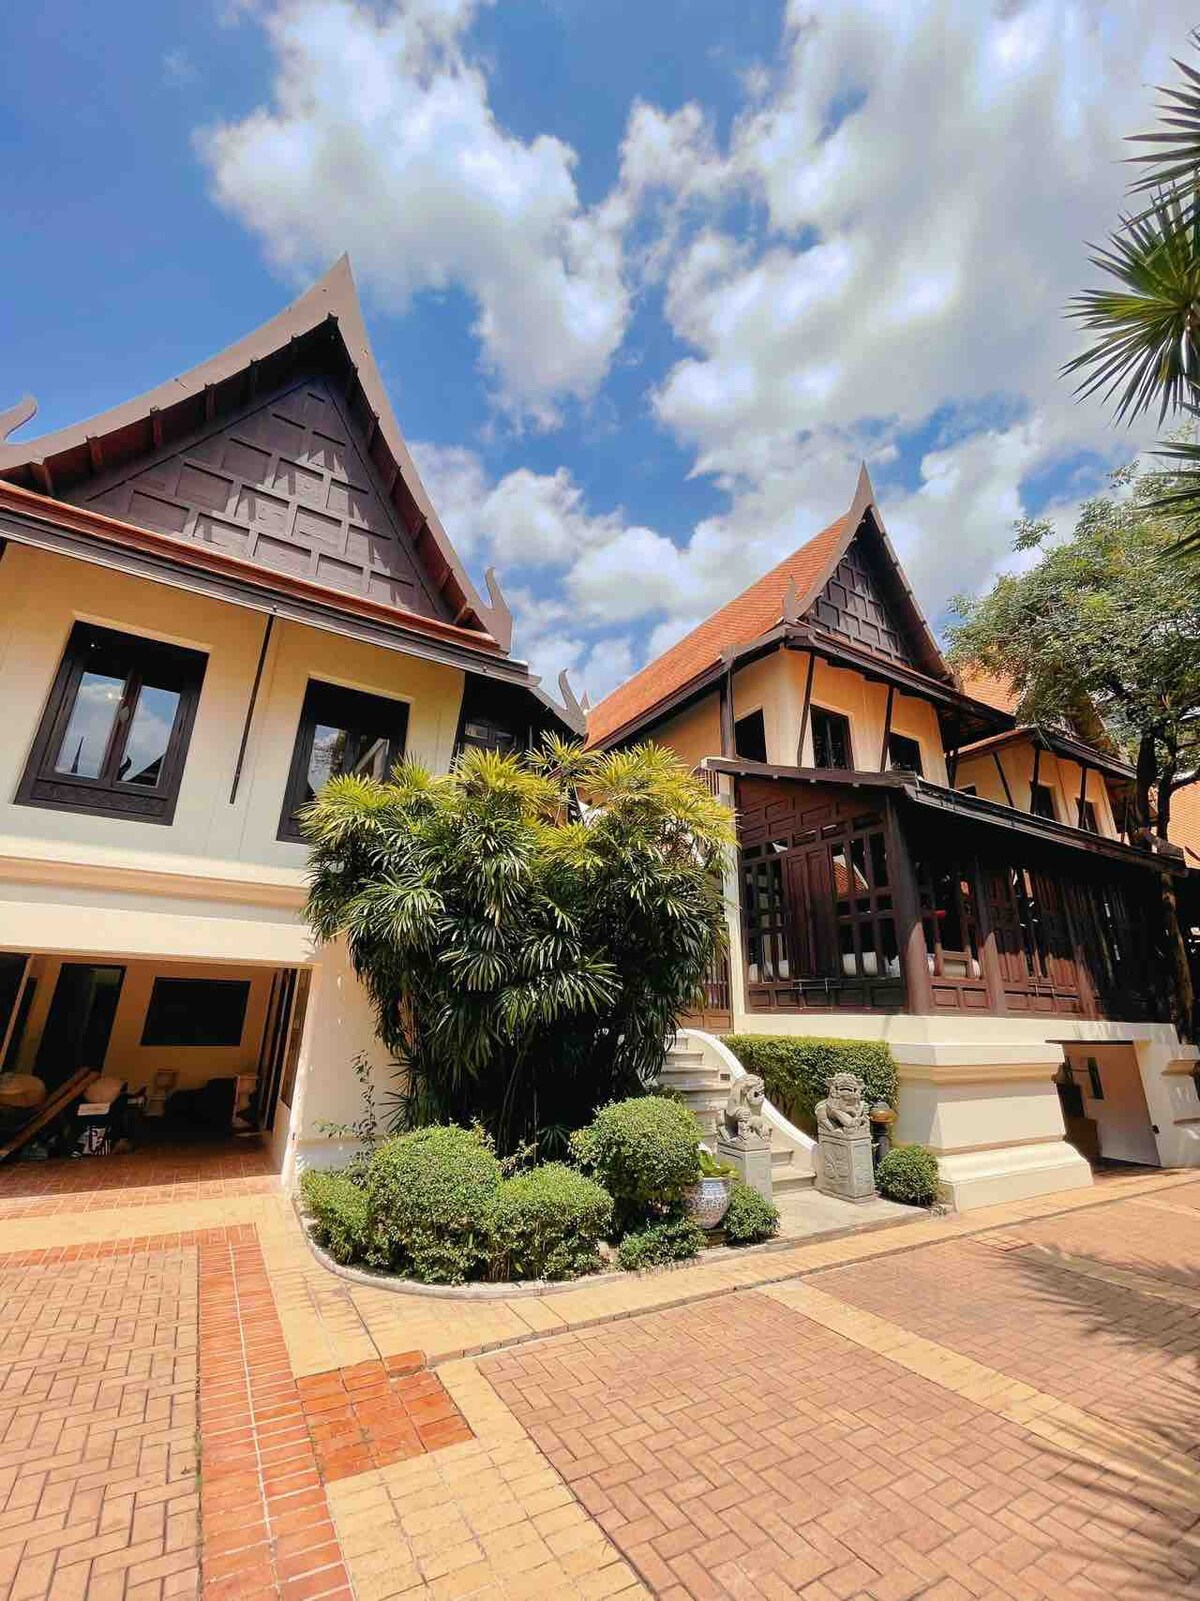 免费接机 泰国皇家园林豪华别墅  繁华商业区  私家豪华泳池 管家服务